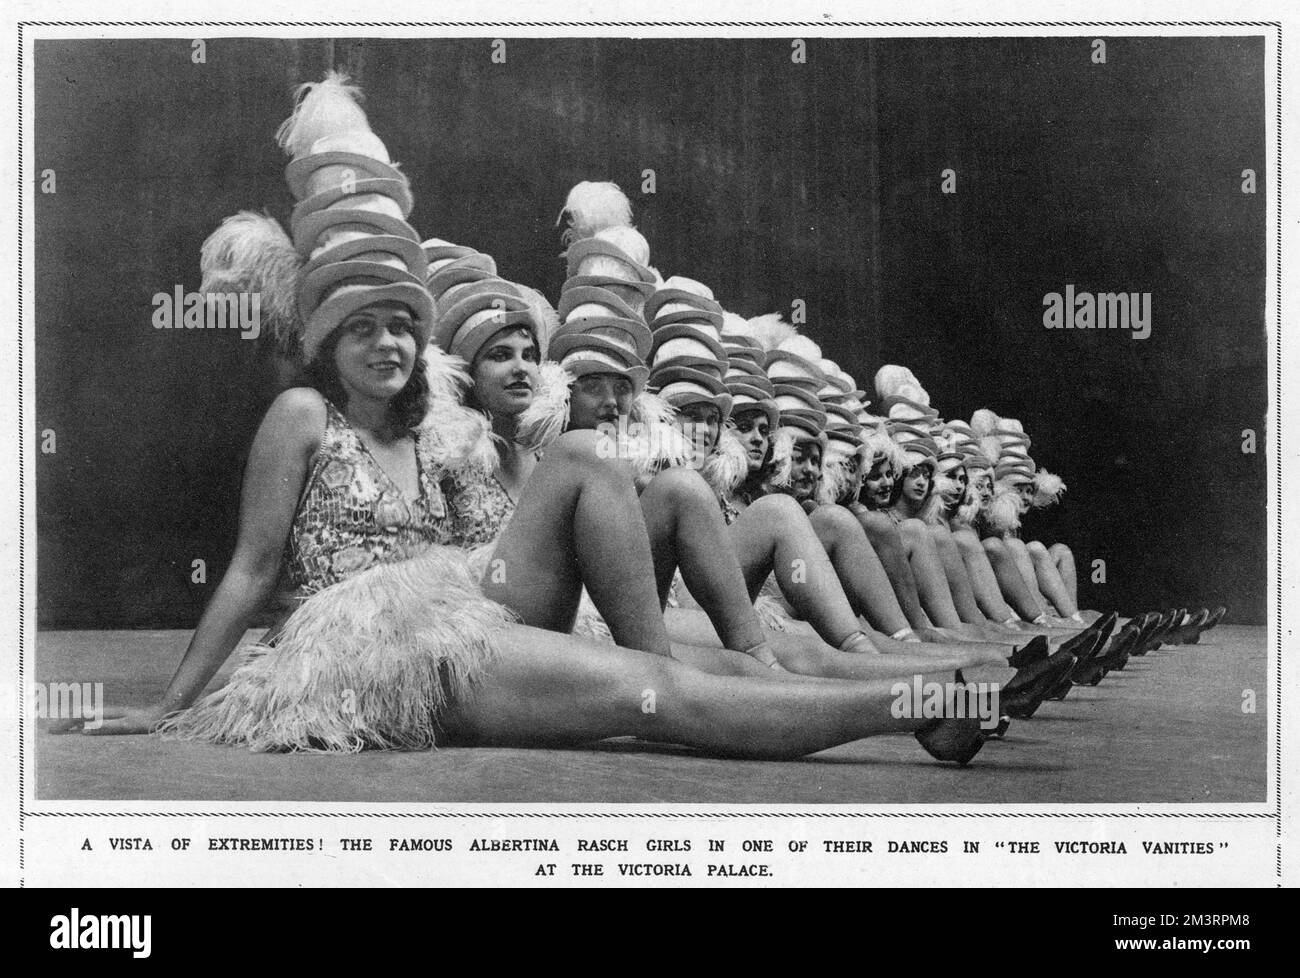 Una vista delle estremità! Le famose Albertina Rasch Girls in una delle loro danze nelle vanità Vittoria al Victoria Palace Theatre, Londra, 1930. Data: 1930 Foto Stock